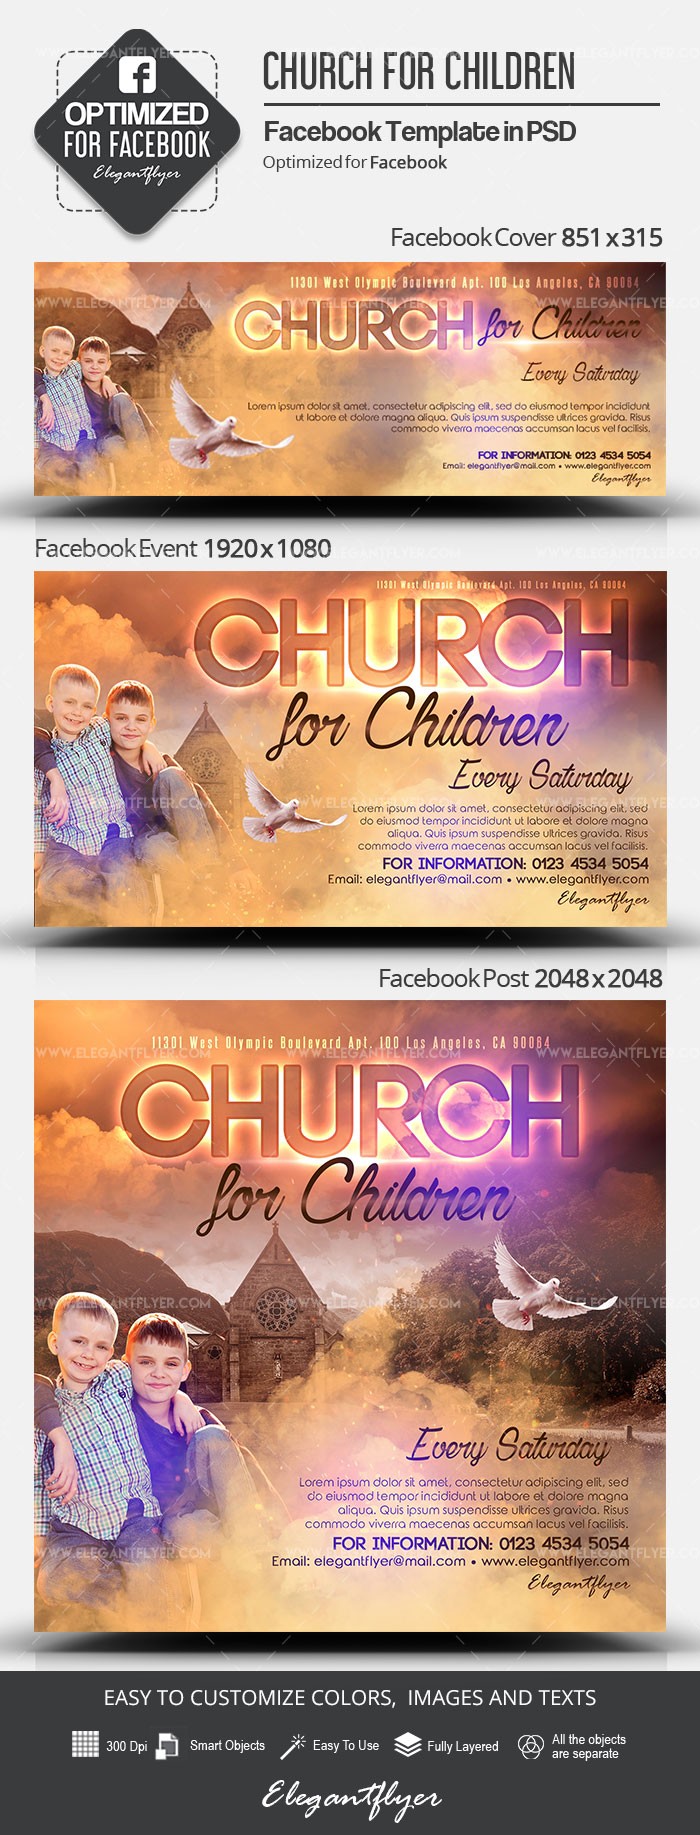 Iglesia para Niños en Facebook by ElegantFlyer